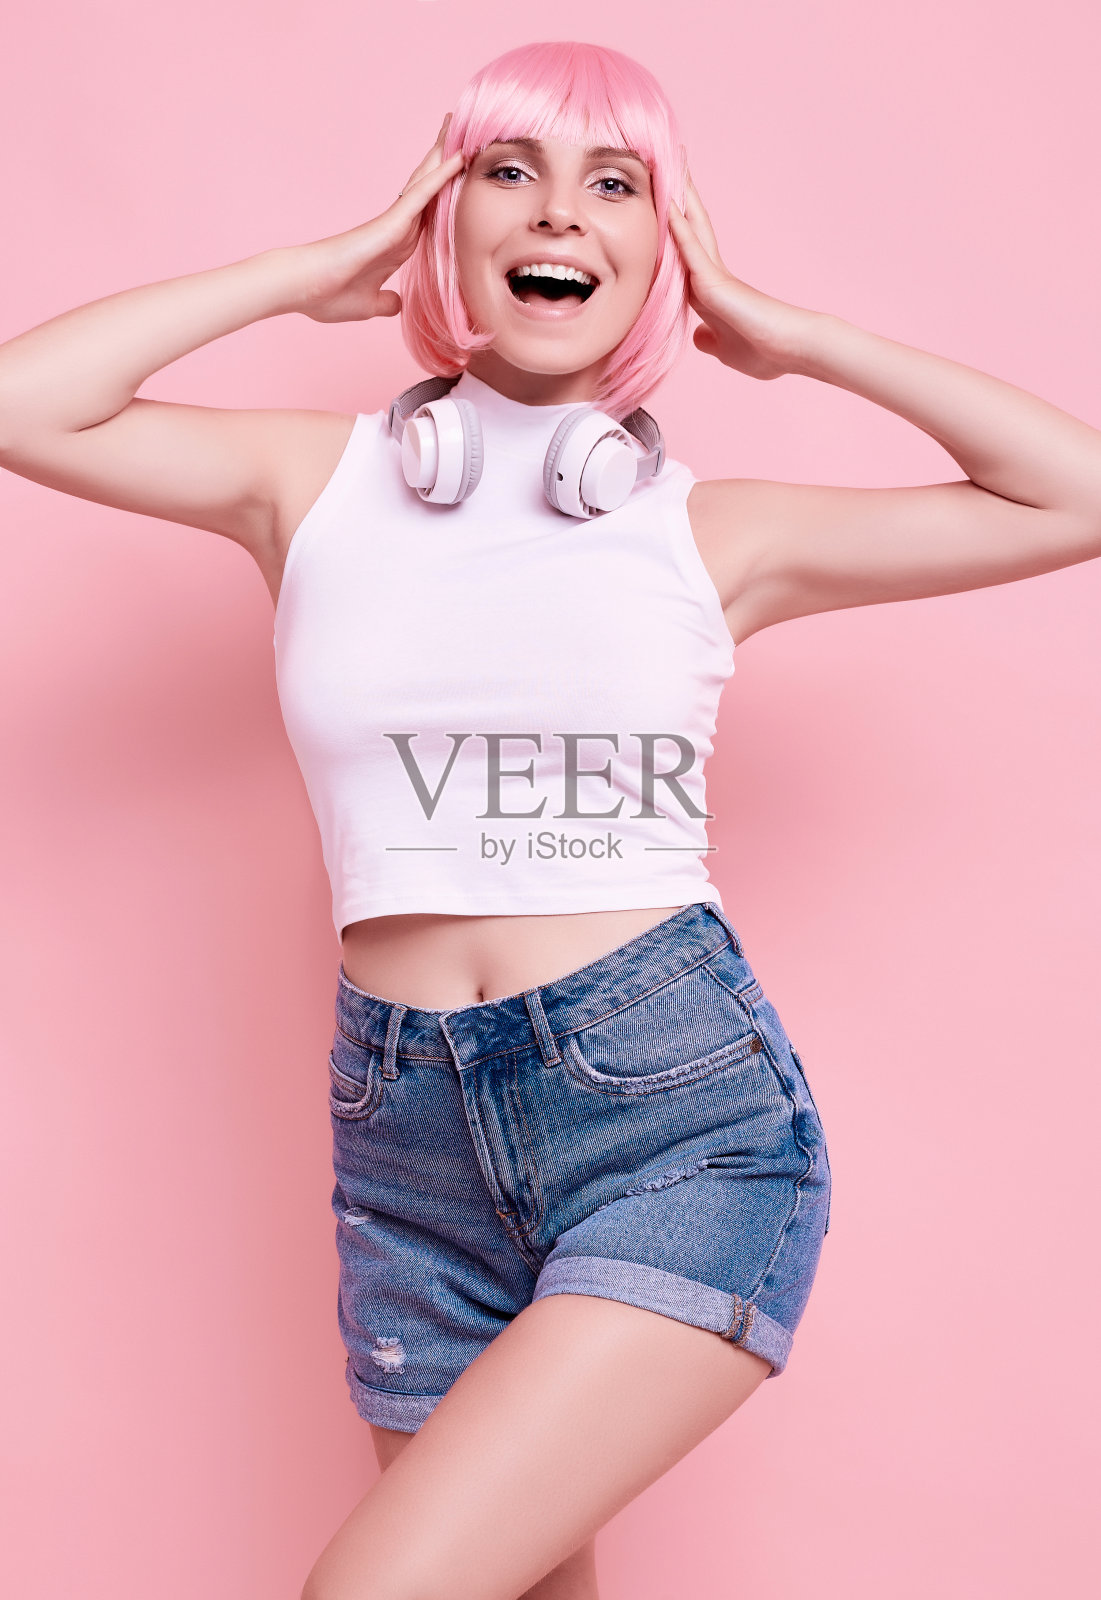 亮粉色头发的时髦女孩戴着耳机听音乐照片摄影图片